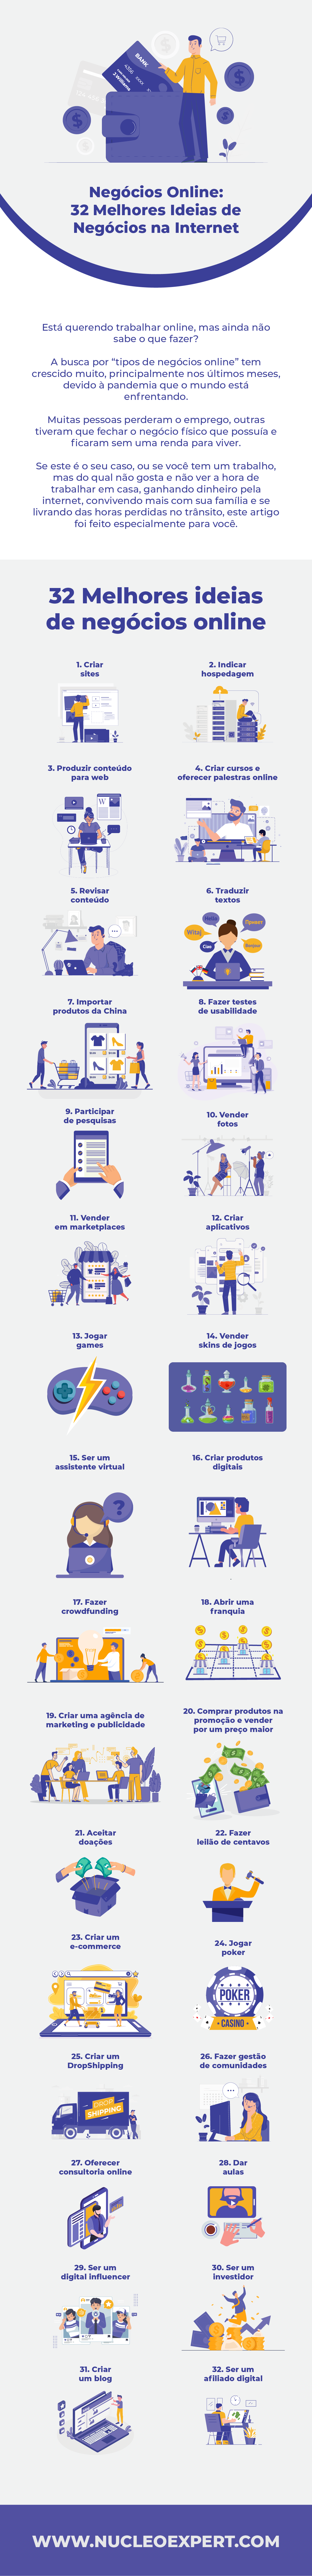 infografico - 32 Melhores Ideias de Negócios na Internet